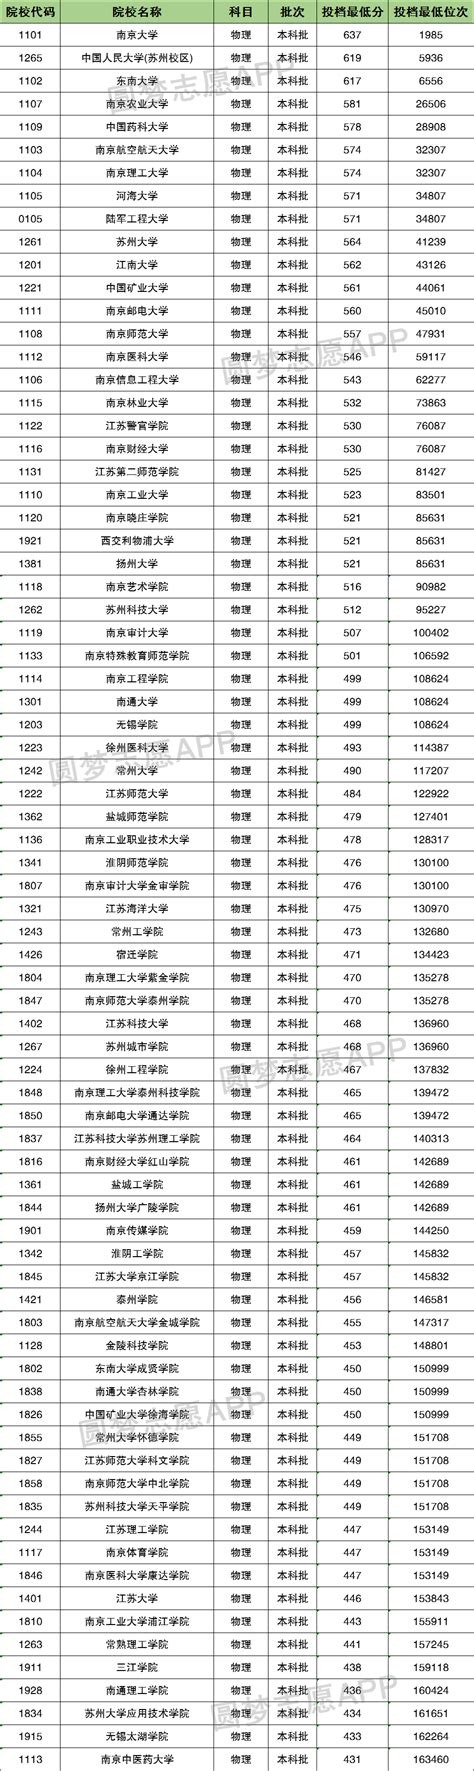 2020年江苏成人高考录取分数线的公告 - 江苏成人高考网-江苏成人高考报名网